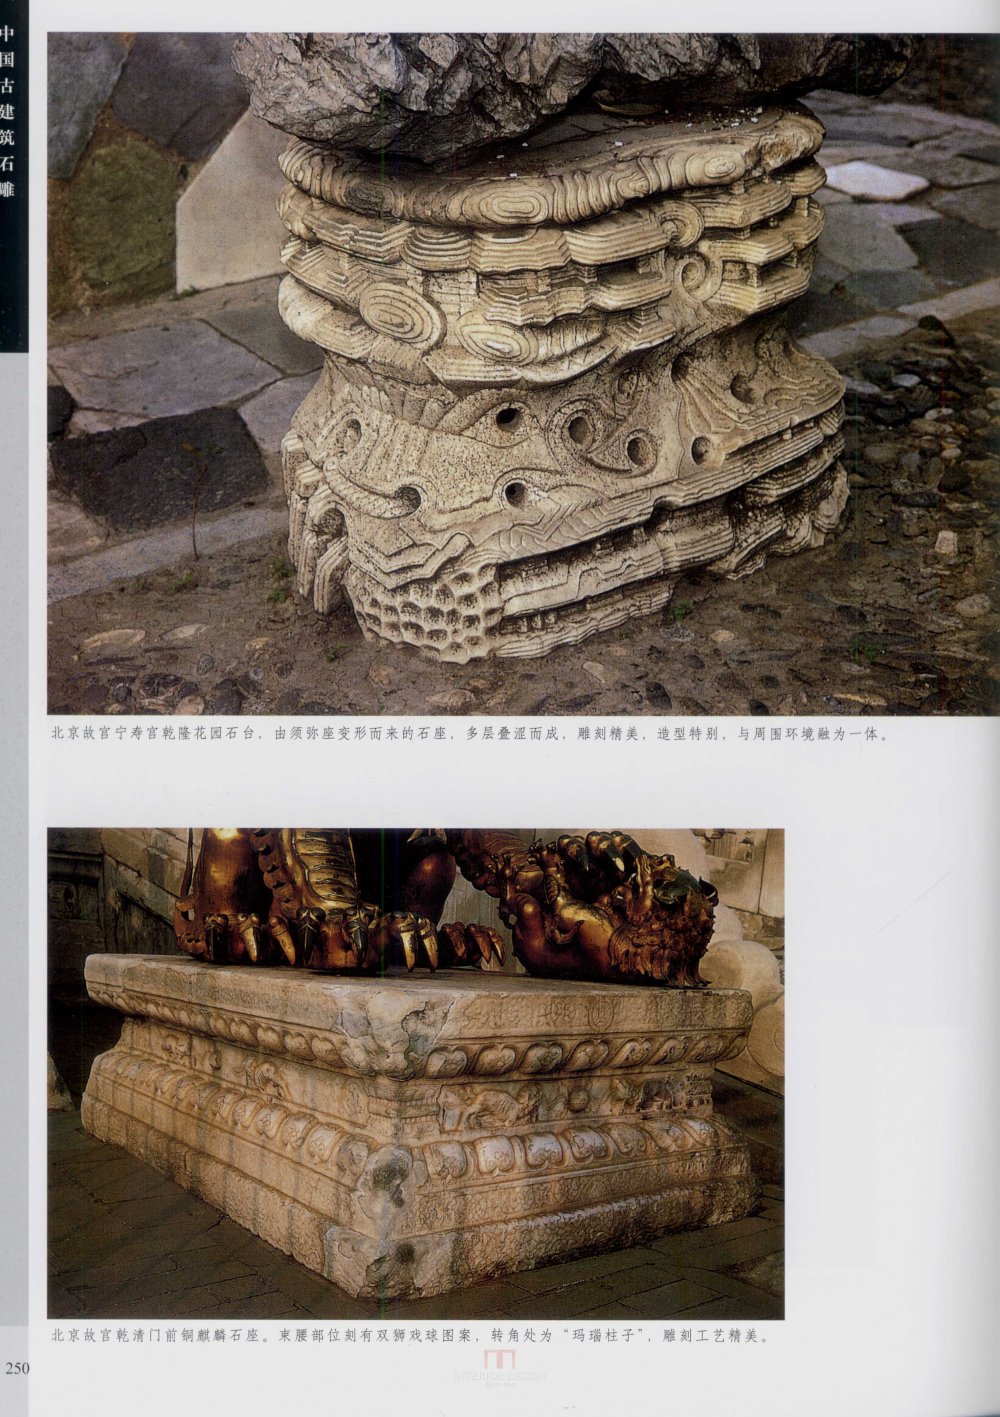 中国古代建筑 石雕_kobe 0257.jpg